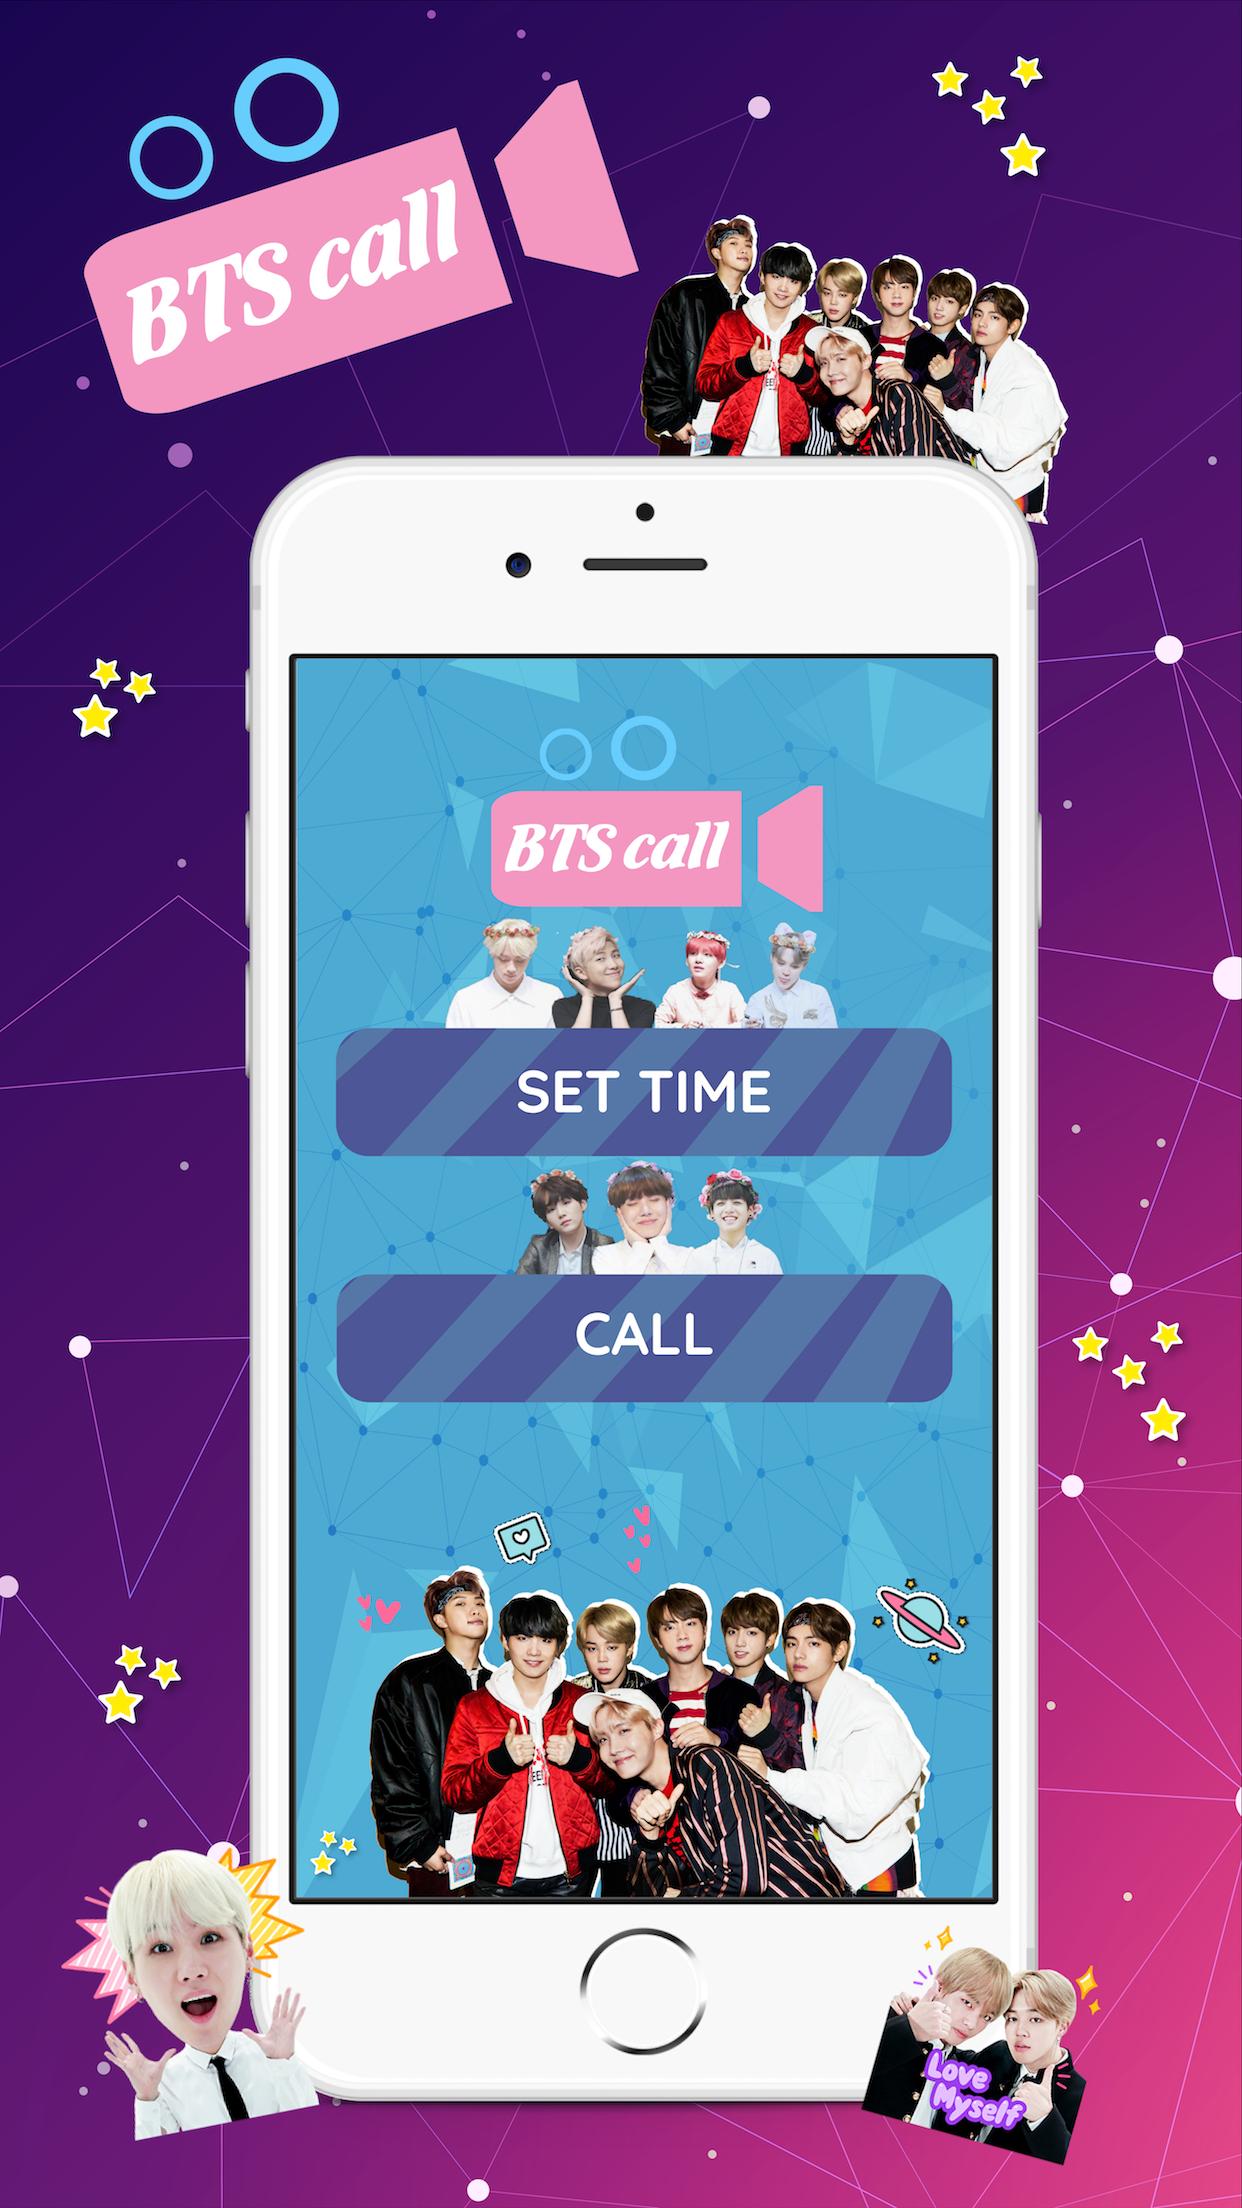 Bts tools. BTS темы для андроид. БТС айдол фит. BTS приложение на телефон игра. Idol BTS обложка.